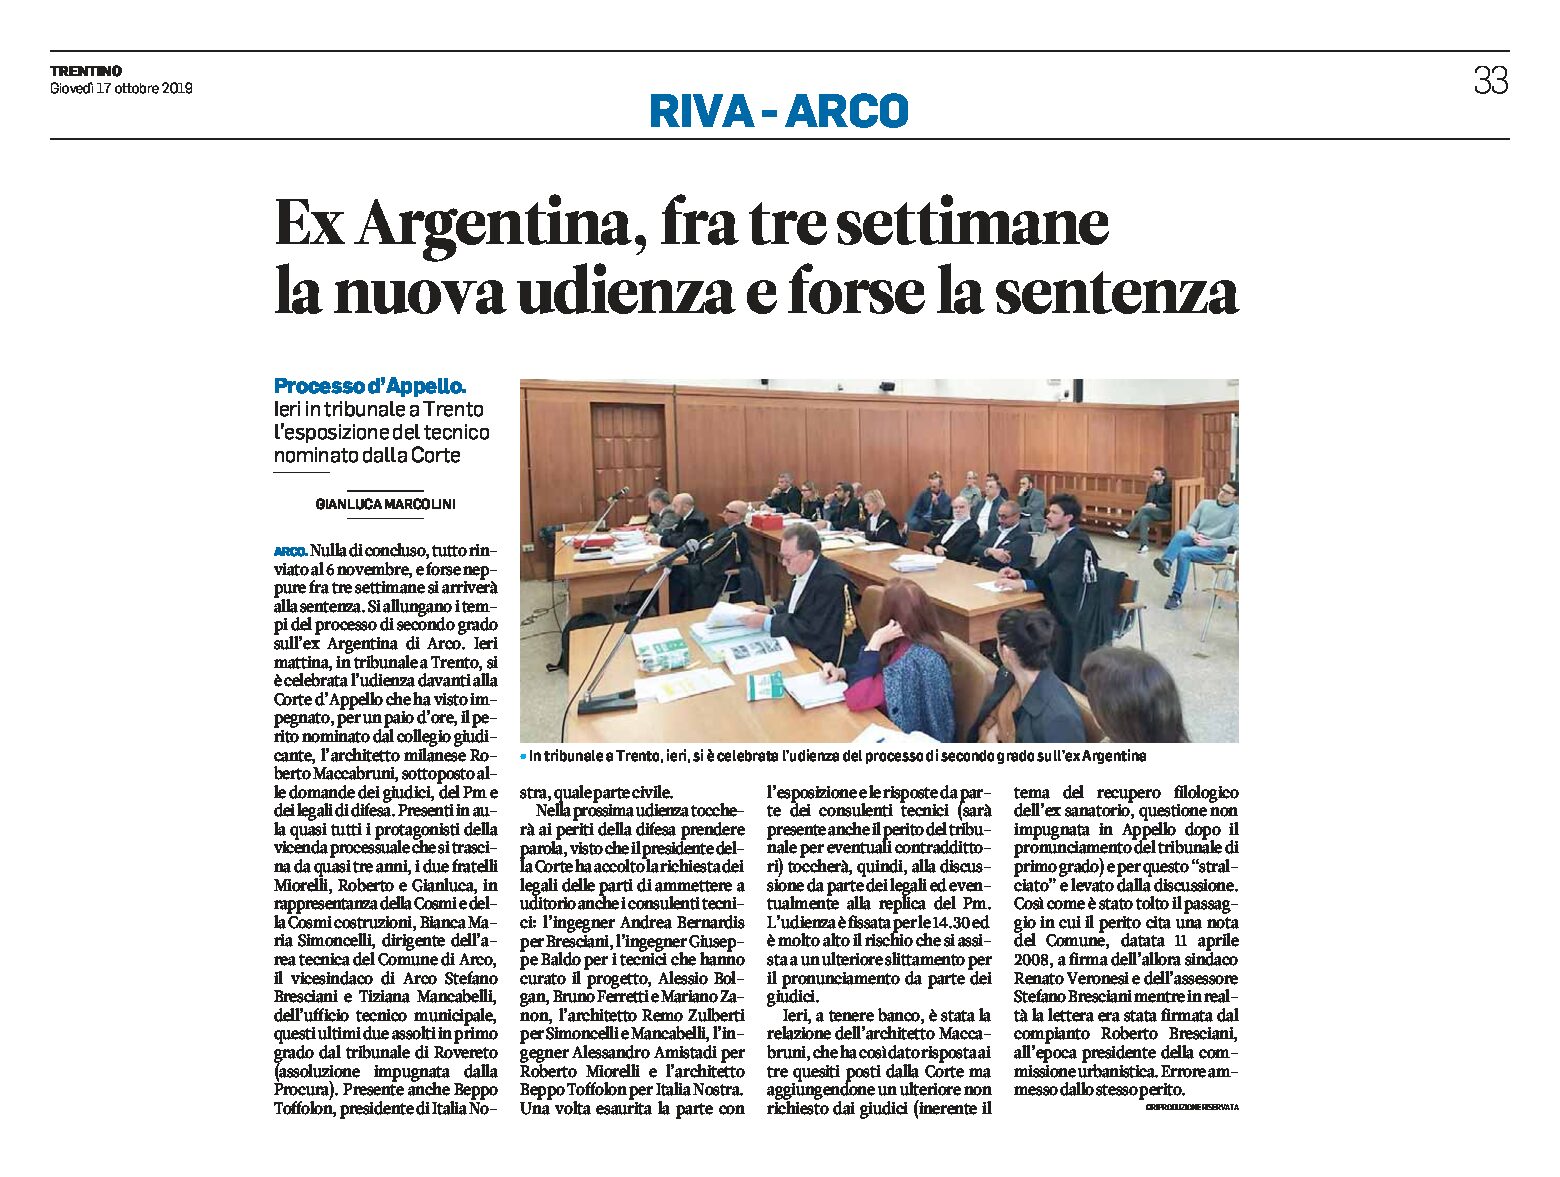 Ex Argentina: fra tre settimane la nuova udienza e forse la sentenza